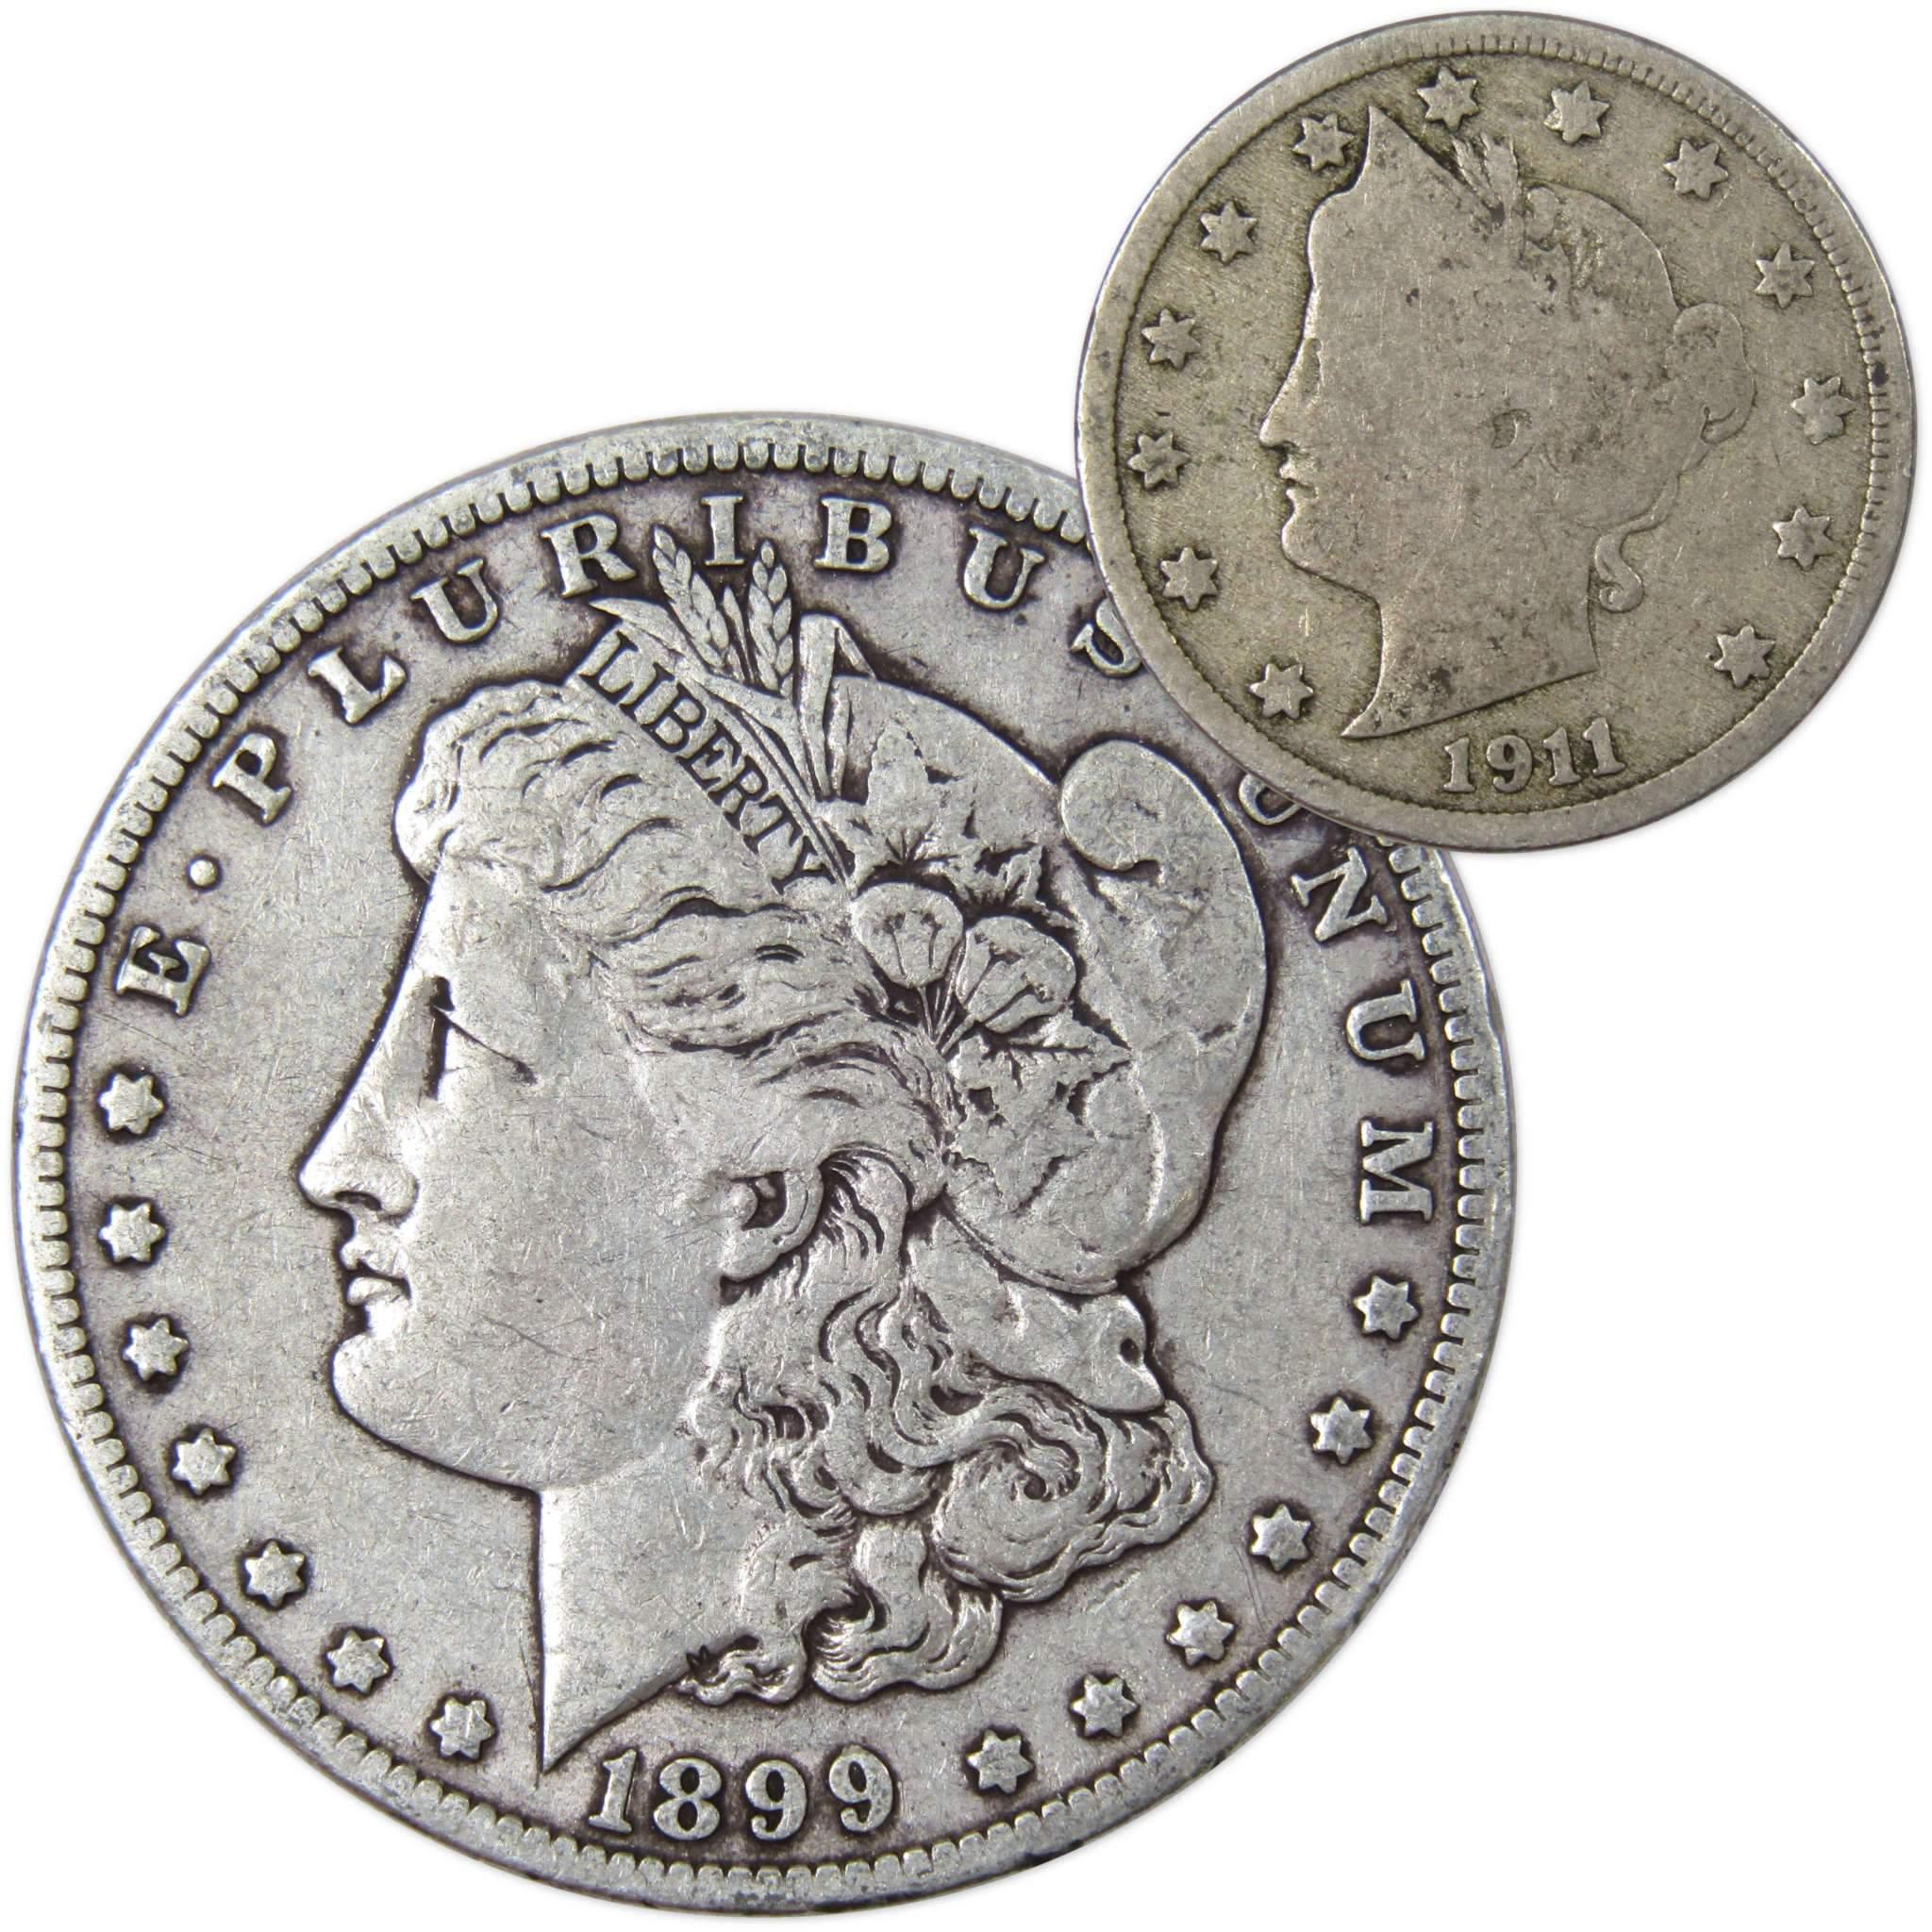 1899 O Morgan Dollar VF Very Fine 90% Silver with 1911 Liberty Nickel G Good - Morgan coin - Morgan silver dollar - Morgan silver dollar for sale - Profile Coins &amp; Collectibles